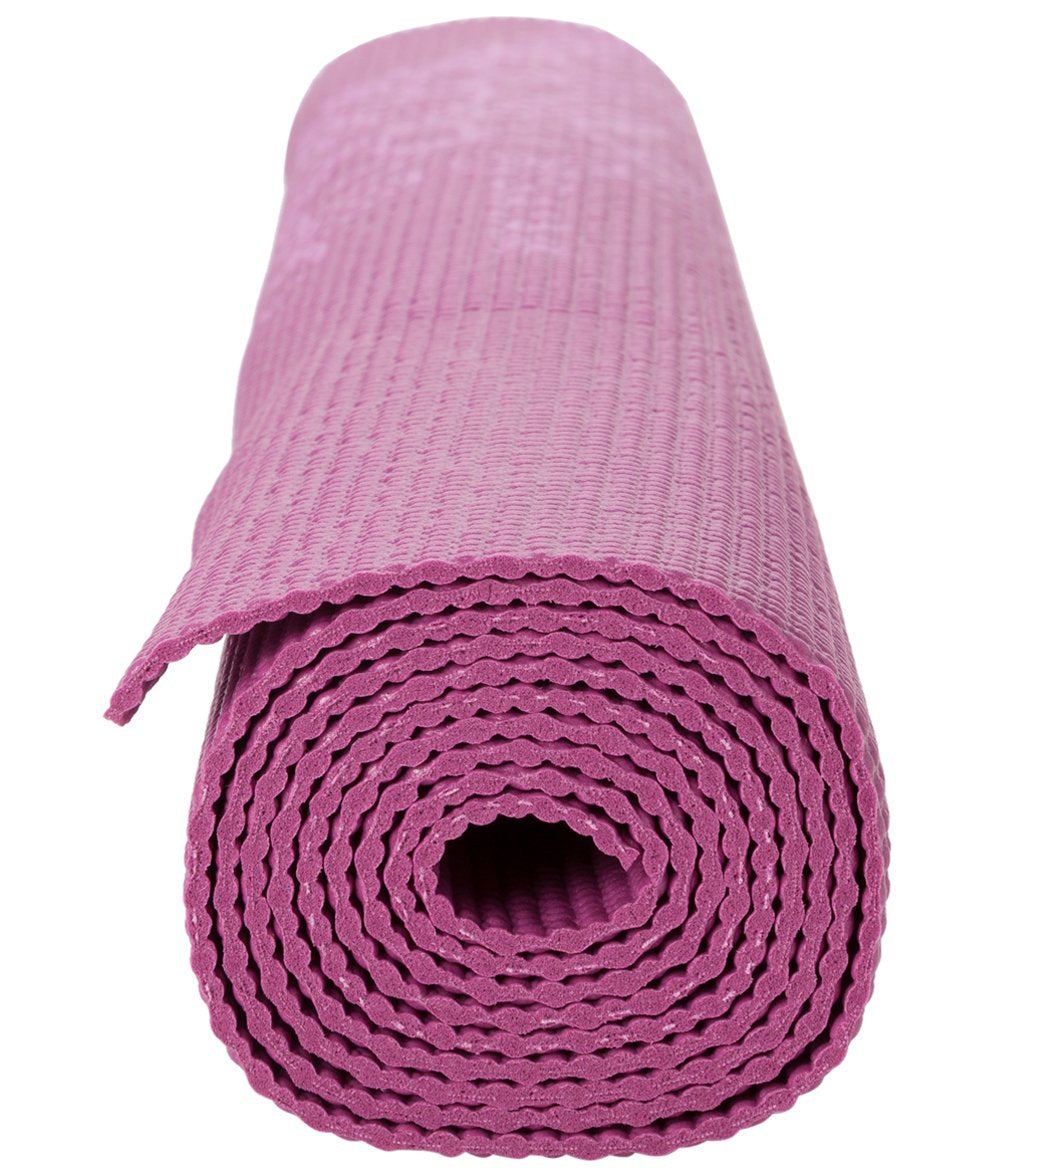 Gaiam Printed Yoga Mat - Dusty Rose (4mm)